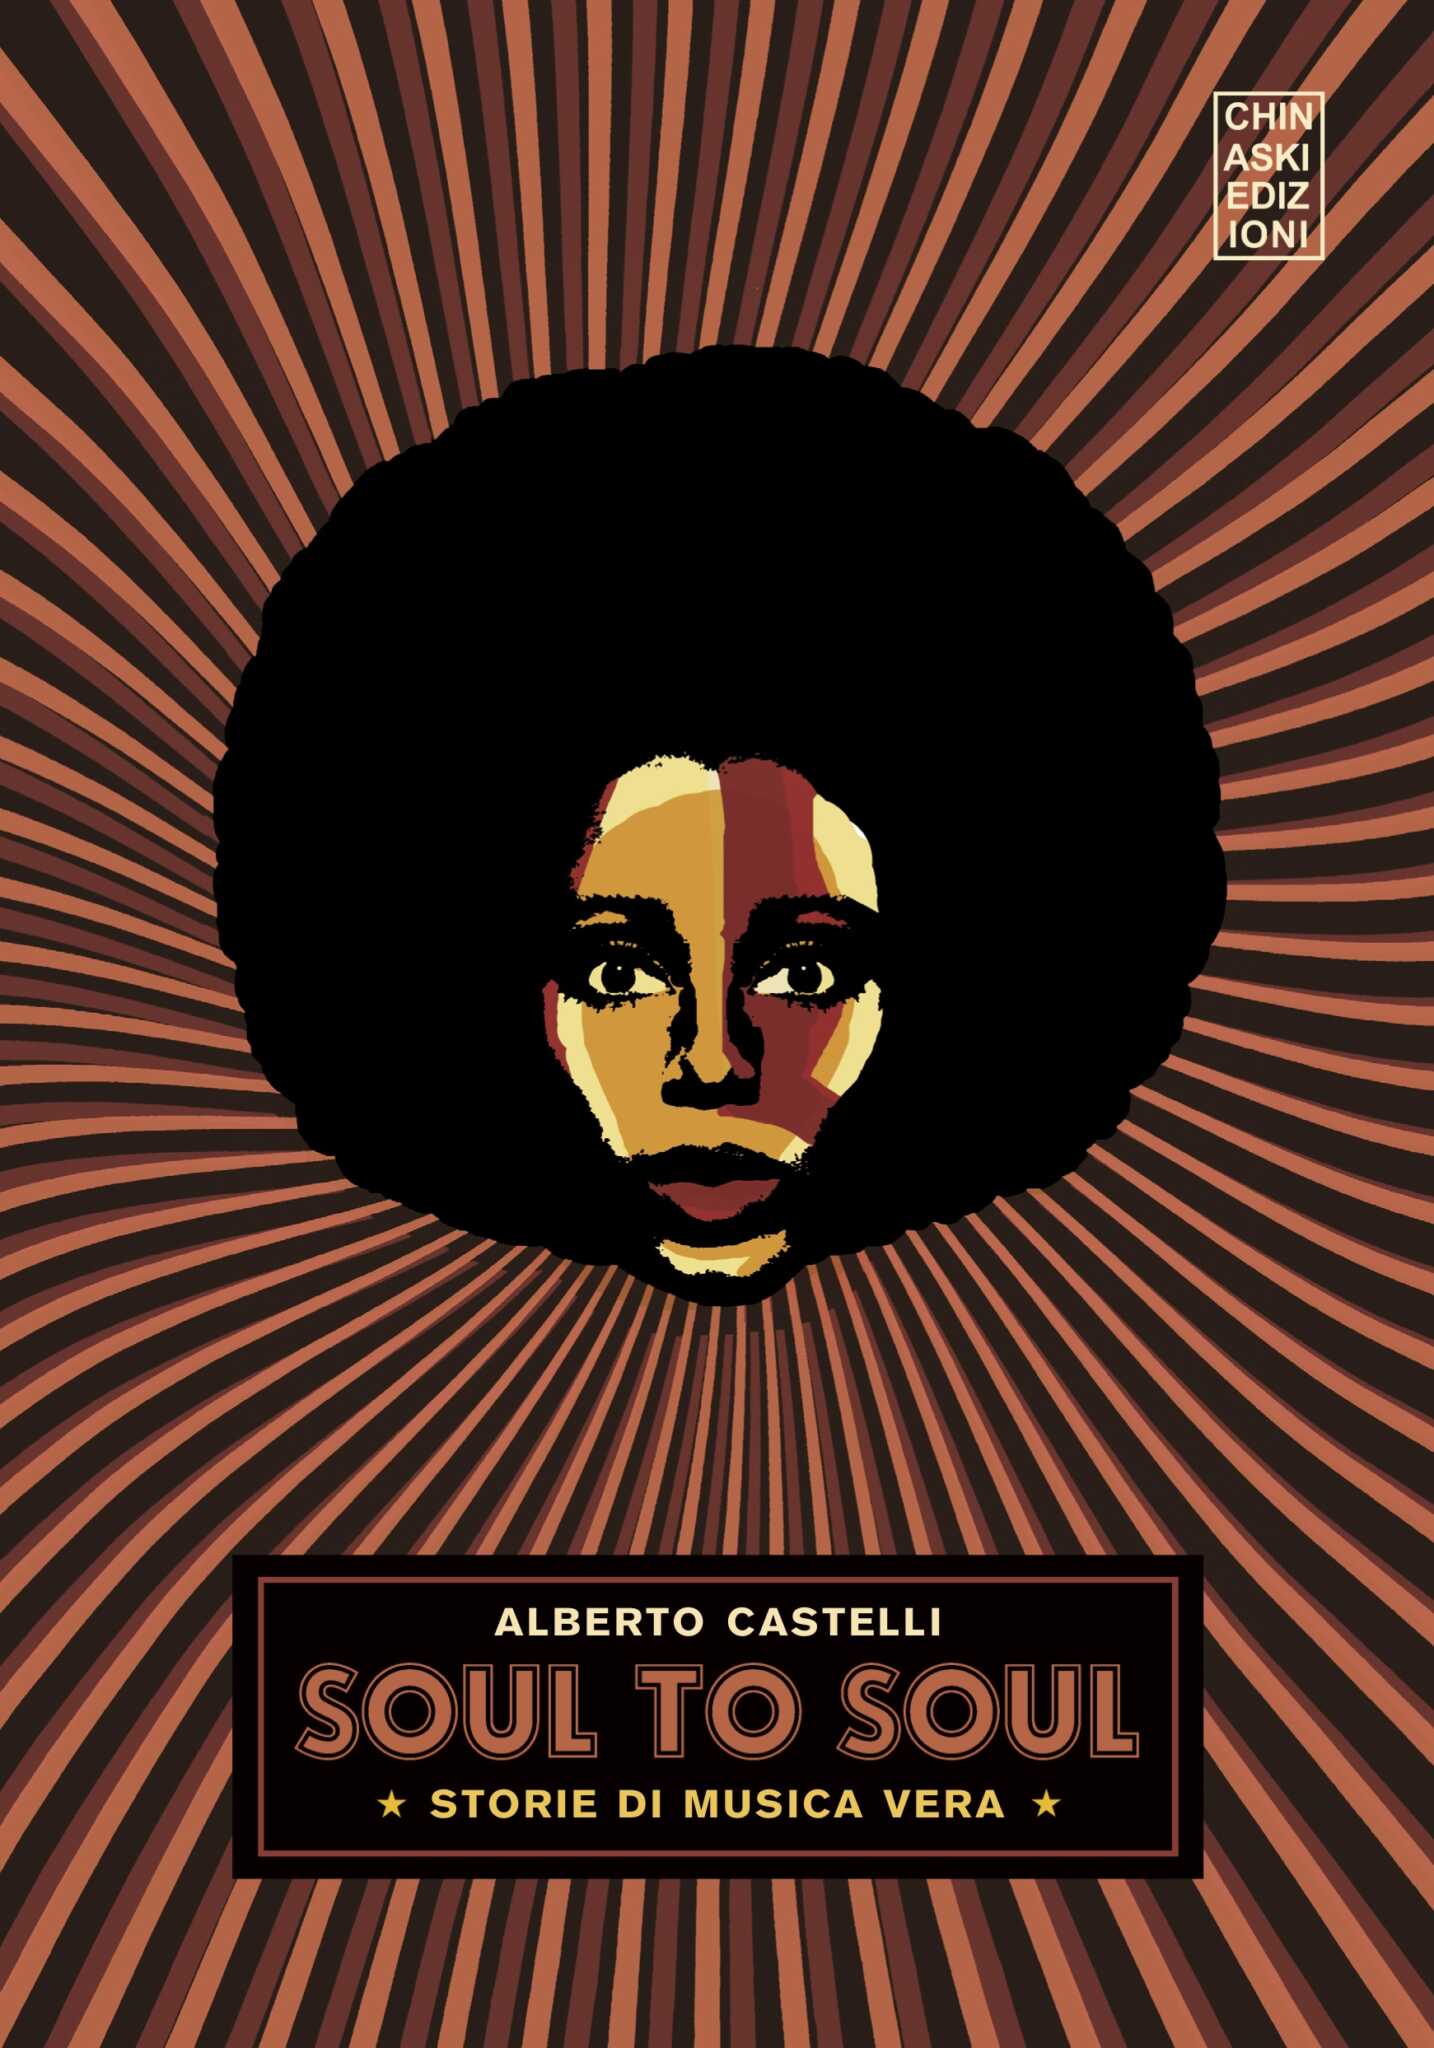 Alberto Castelli a Roscigno Vecchia presenta ‘Soul to Soul’, il suo nuovo libro sulla black music